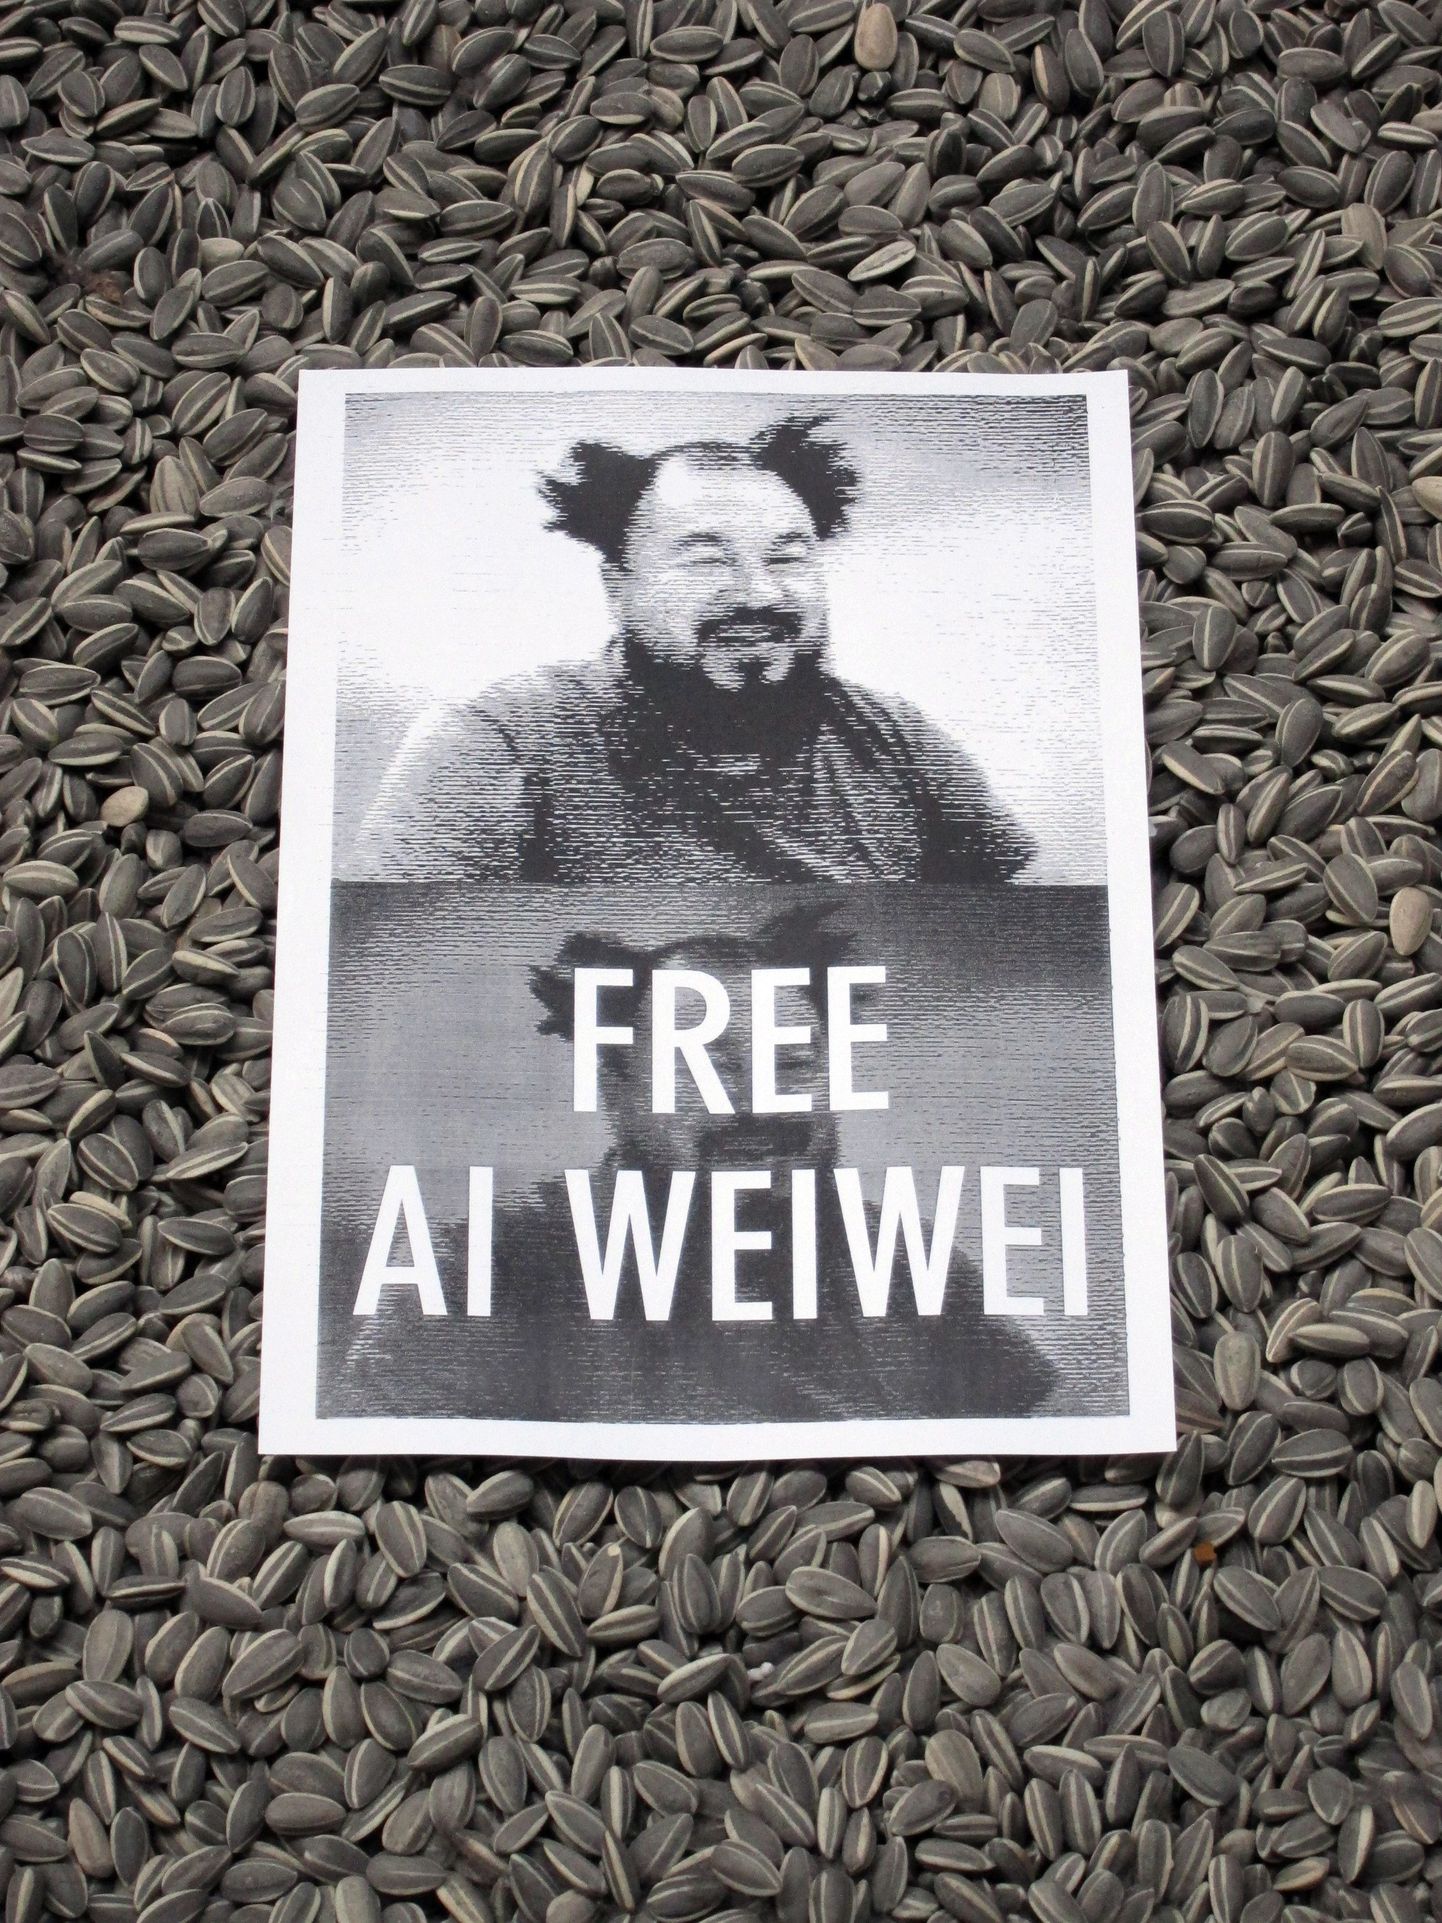 Kunstnik Ai Weiwei vabastamist nõudev plakat.